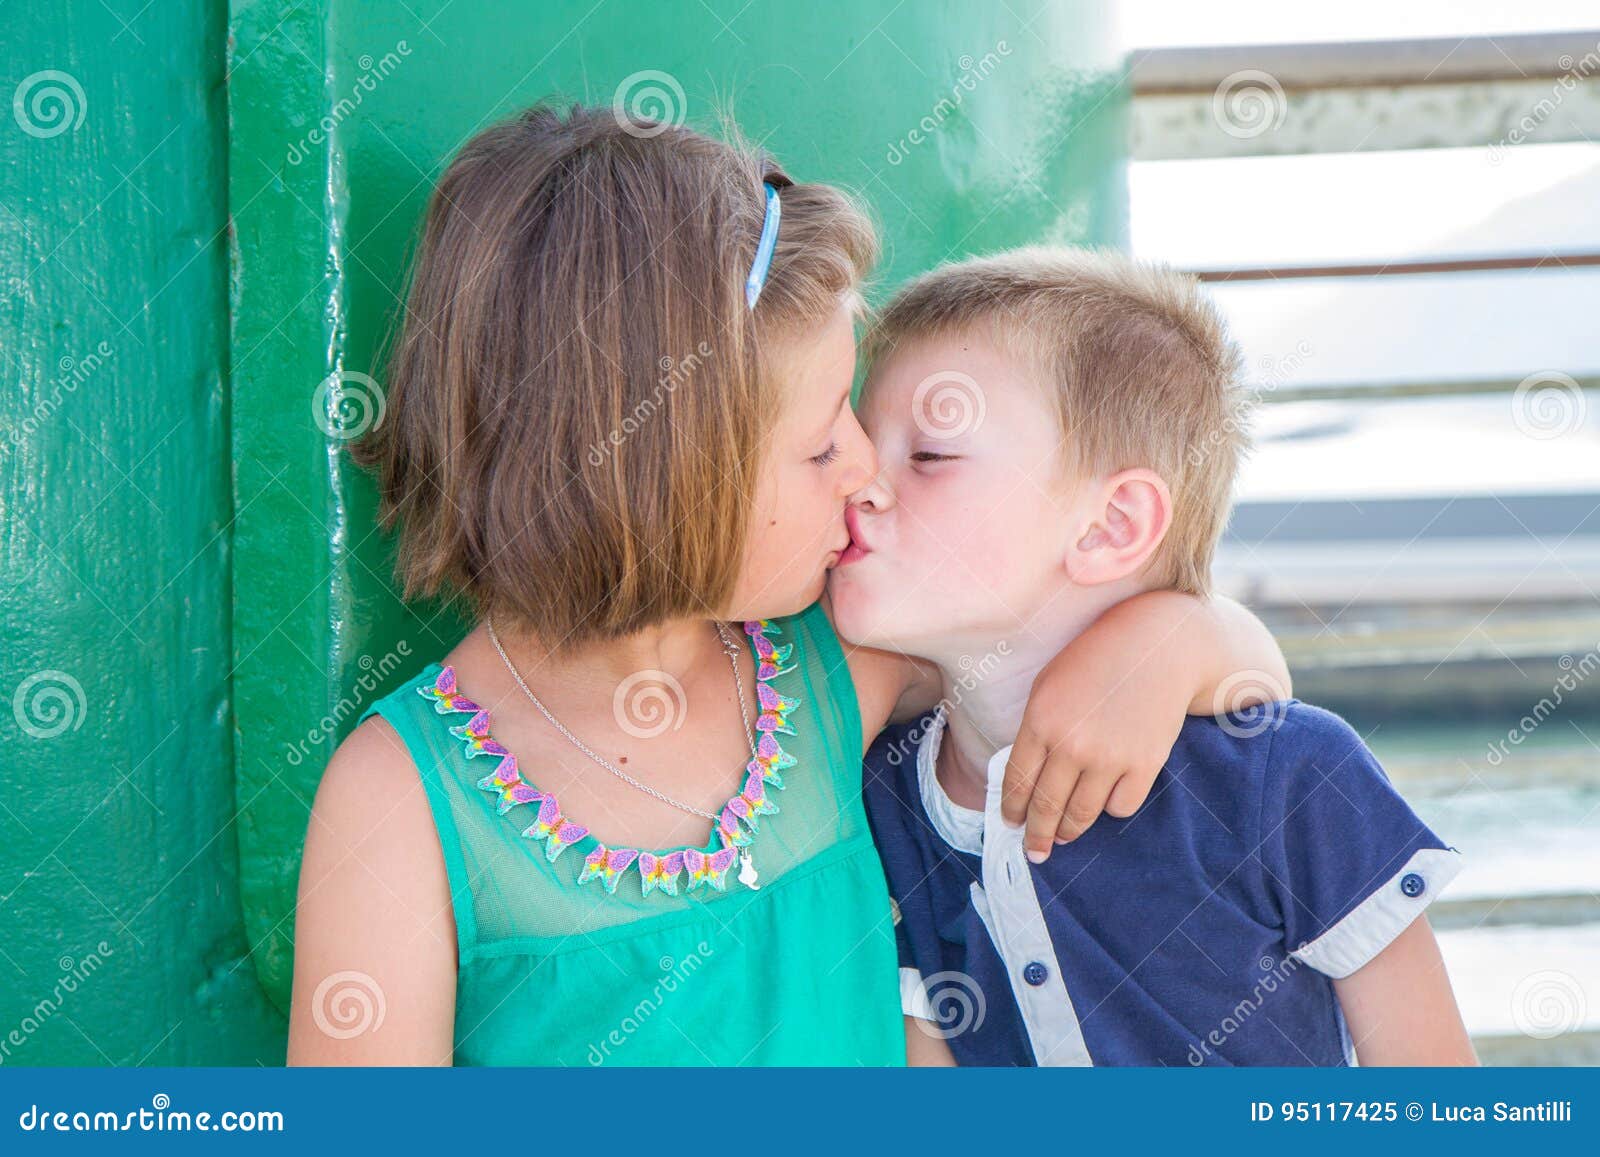 Брат трогает киску. Поцелуй братаси сестры. Поцелуй братьев. Детский поцелуй в губы брата и сестры. Поцелуй девочек сестричек.